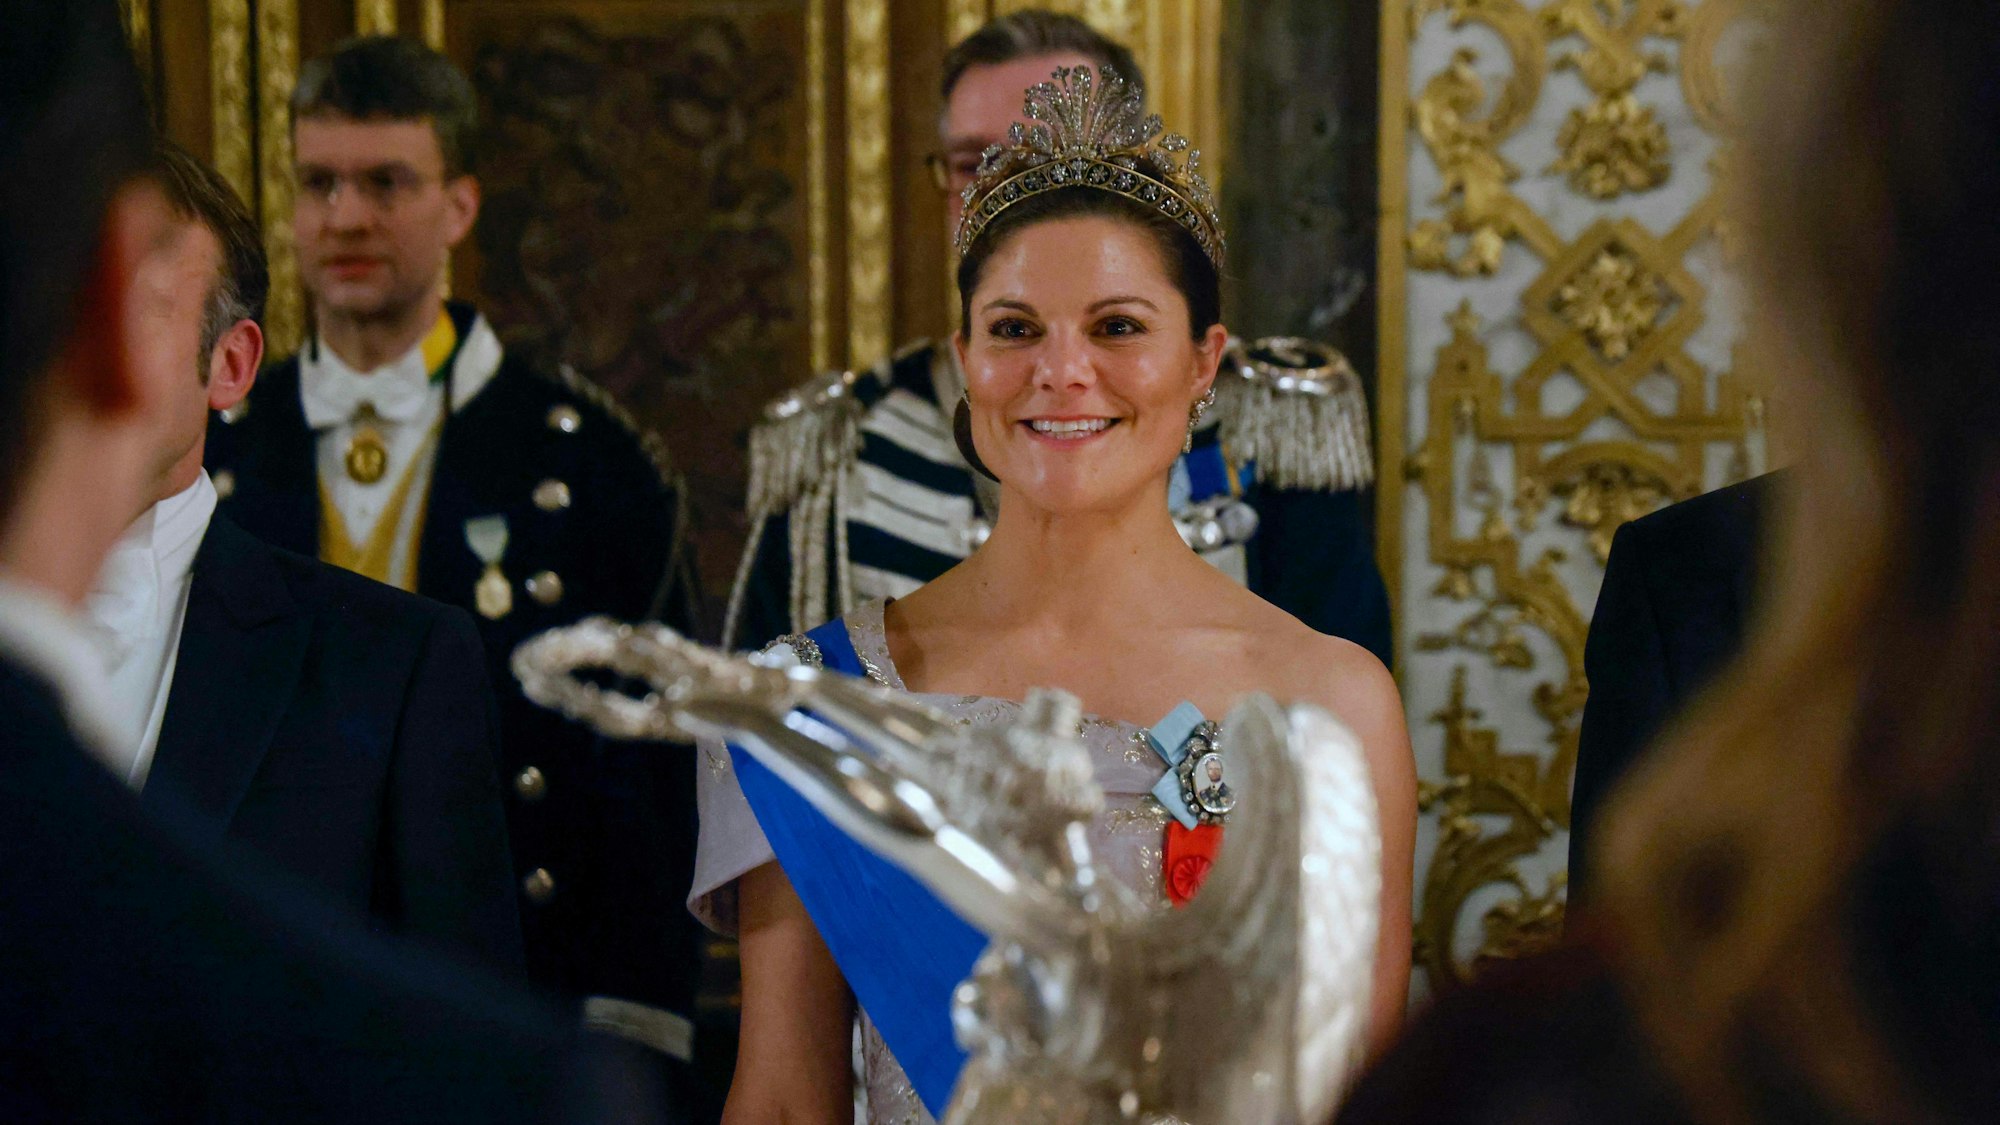 Kronprinzessin Victoria von Schweden trifft vor einem Staatsdinner mit dem französischen Präsidenten Emmanuel Macron im Königlichen Palast in Stockholm ein.